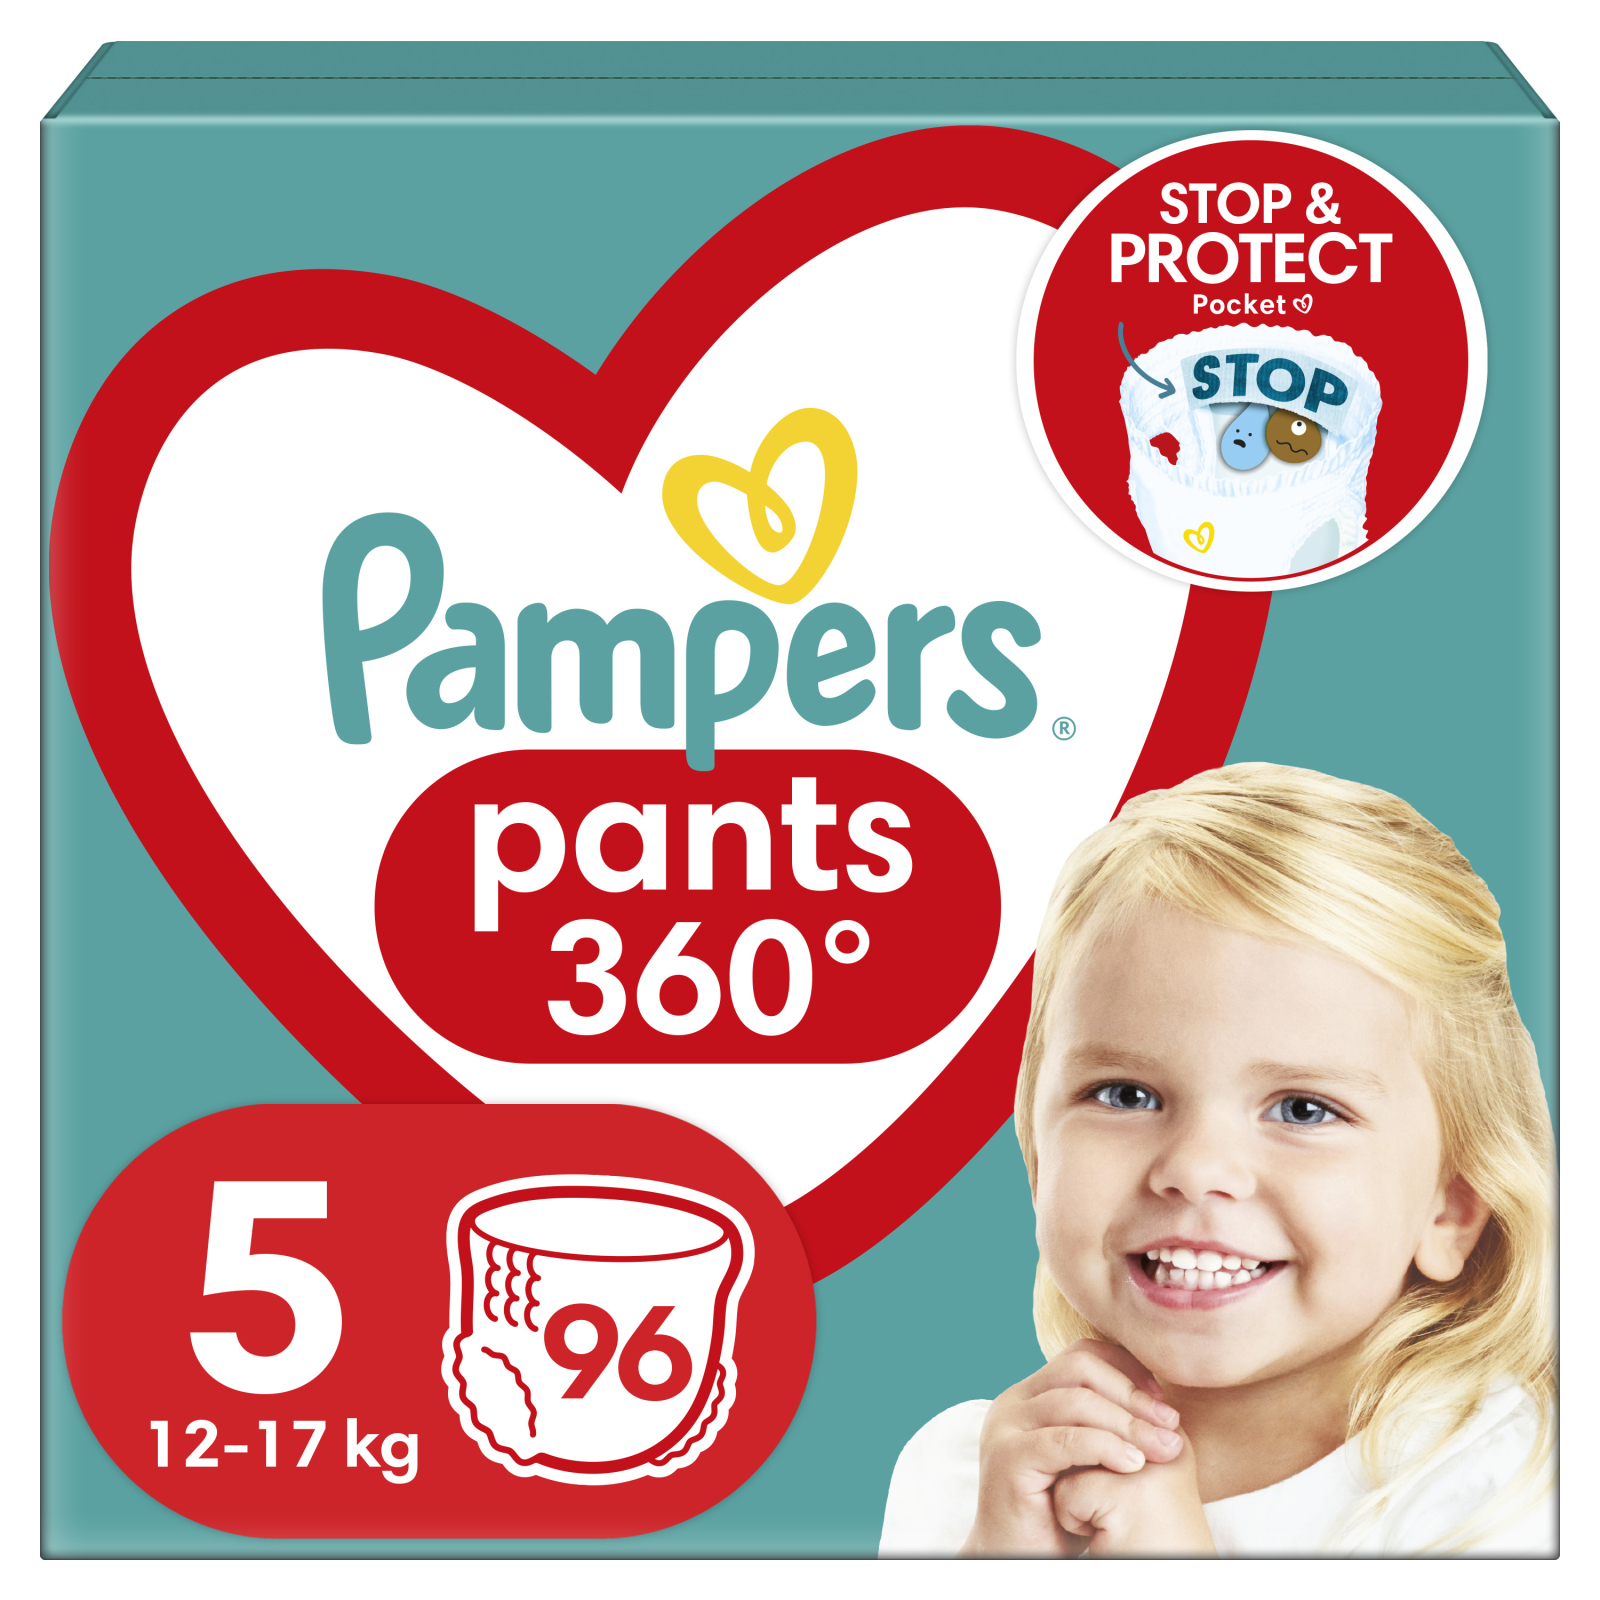 Подгузники Pampers трусики Pants Junior Размер 5 (12-17 кг) 22 шт (8006540067772)